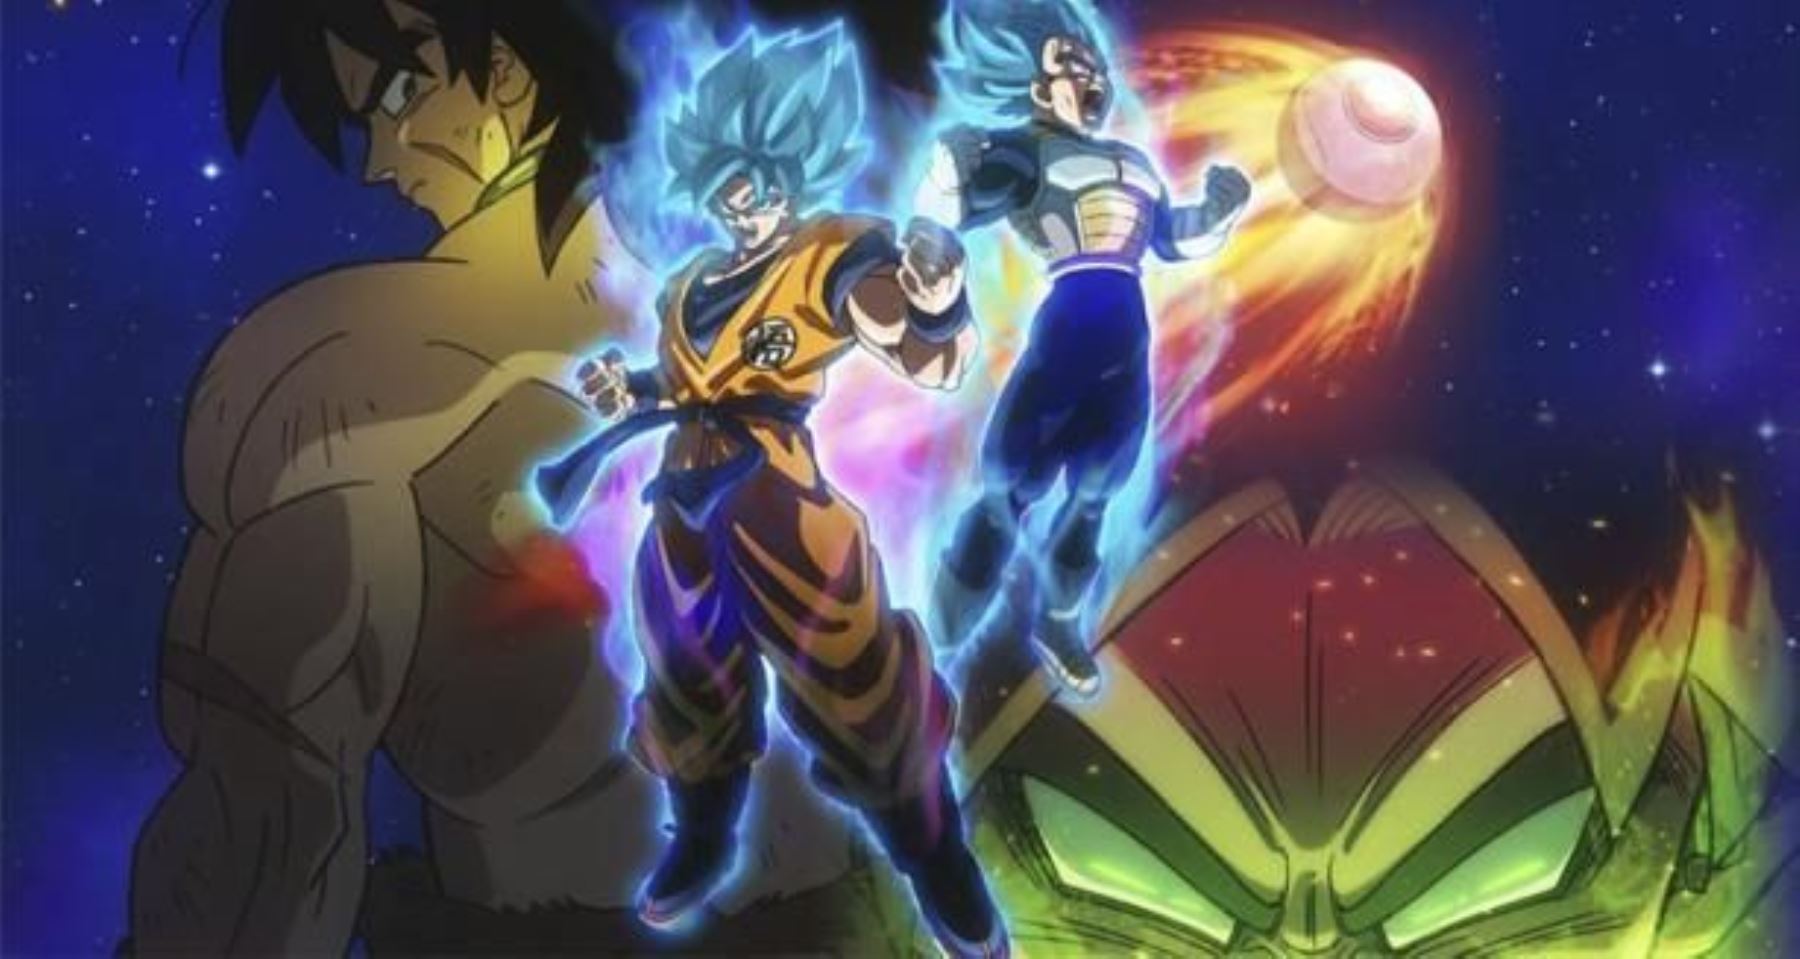 La sorpresa llegó de la mano de la cinta de animación "Dragon Ball Super: Broly", con 10.6 millones de dólares. En la historia, dirigida por Tatsuya Nagamine, los personajes de Goku y Vegeta se topan con Broly, un guerrero saiyajin con unos poderes inimaginables.